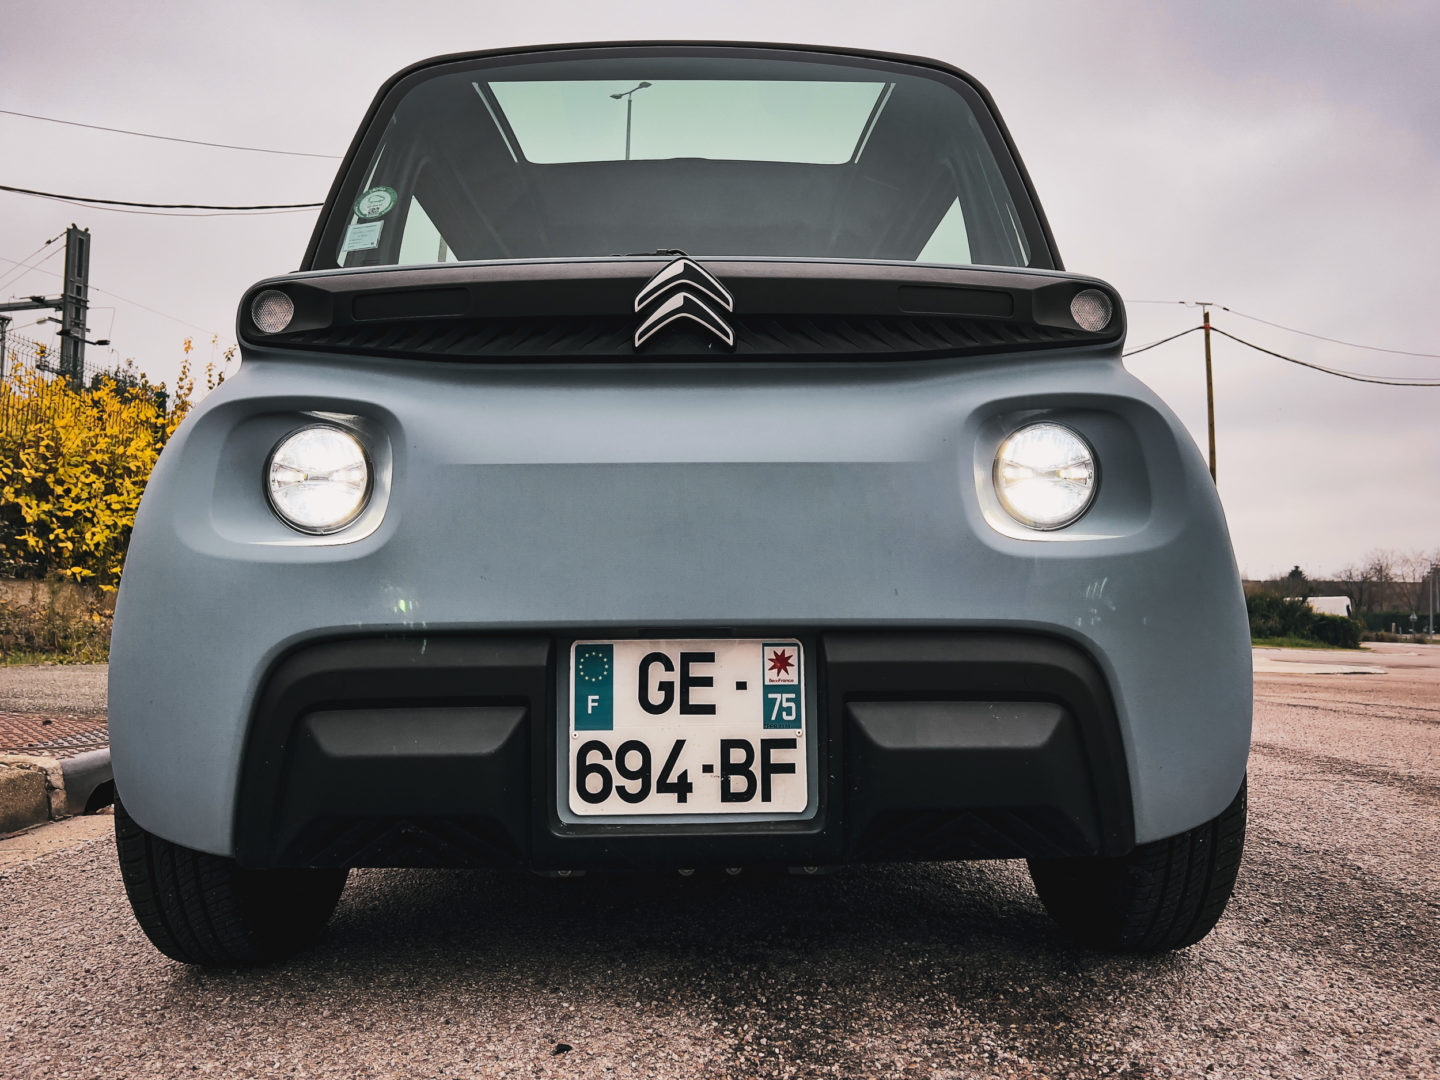 Voiture électrique sans permis : Fiat présente Topolino, son arme face à la  Citroën Ami - Le Parisien